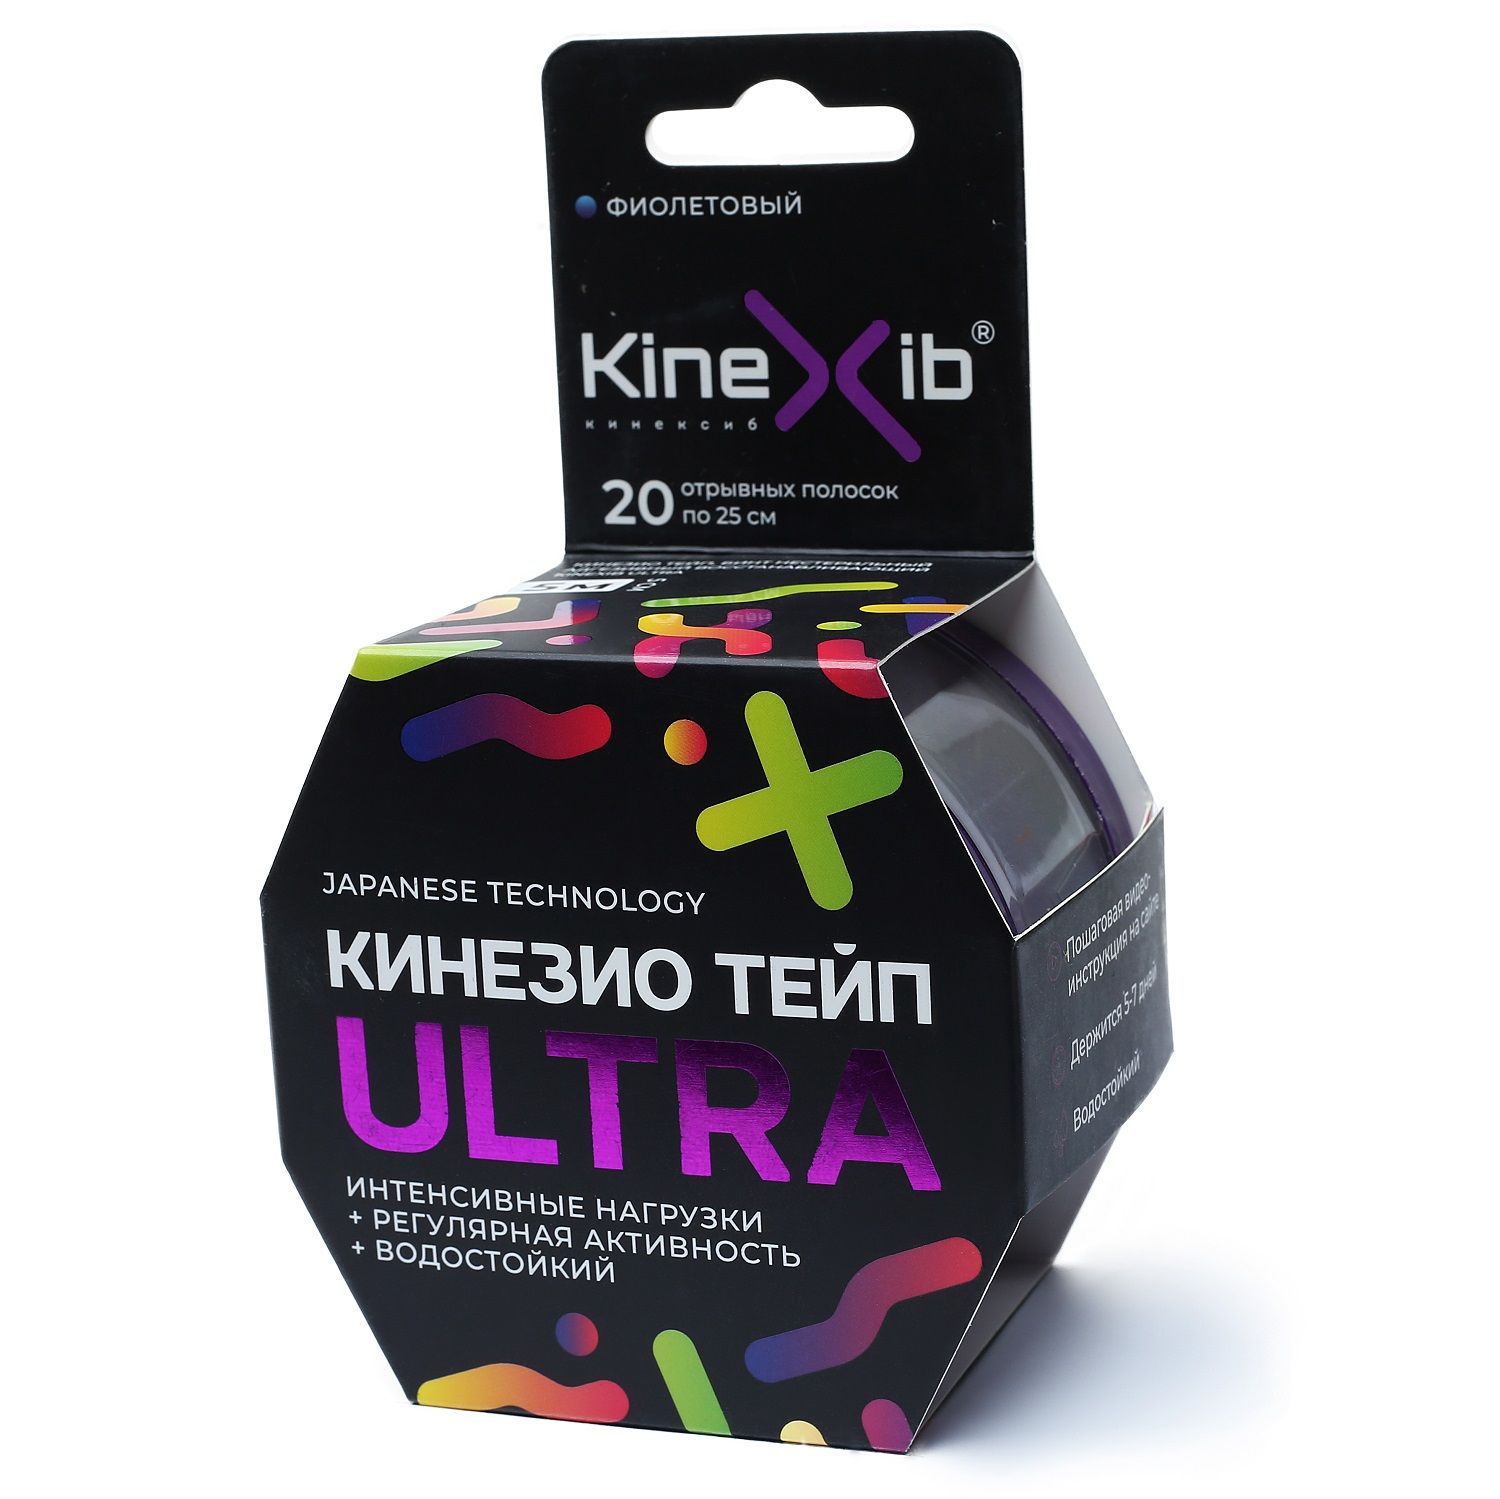 Kinexib Кинезио тейп Ultra 5 м х 5 см, фиолетовый (Kinexib, 